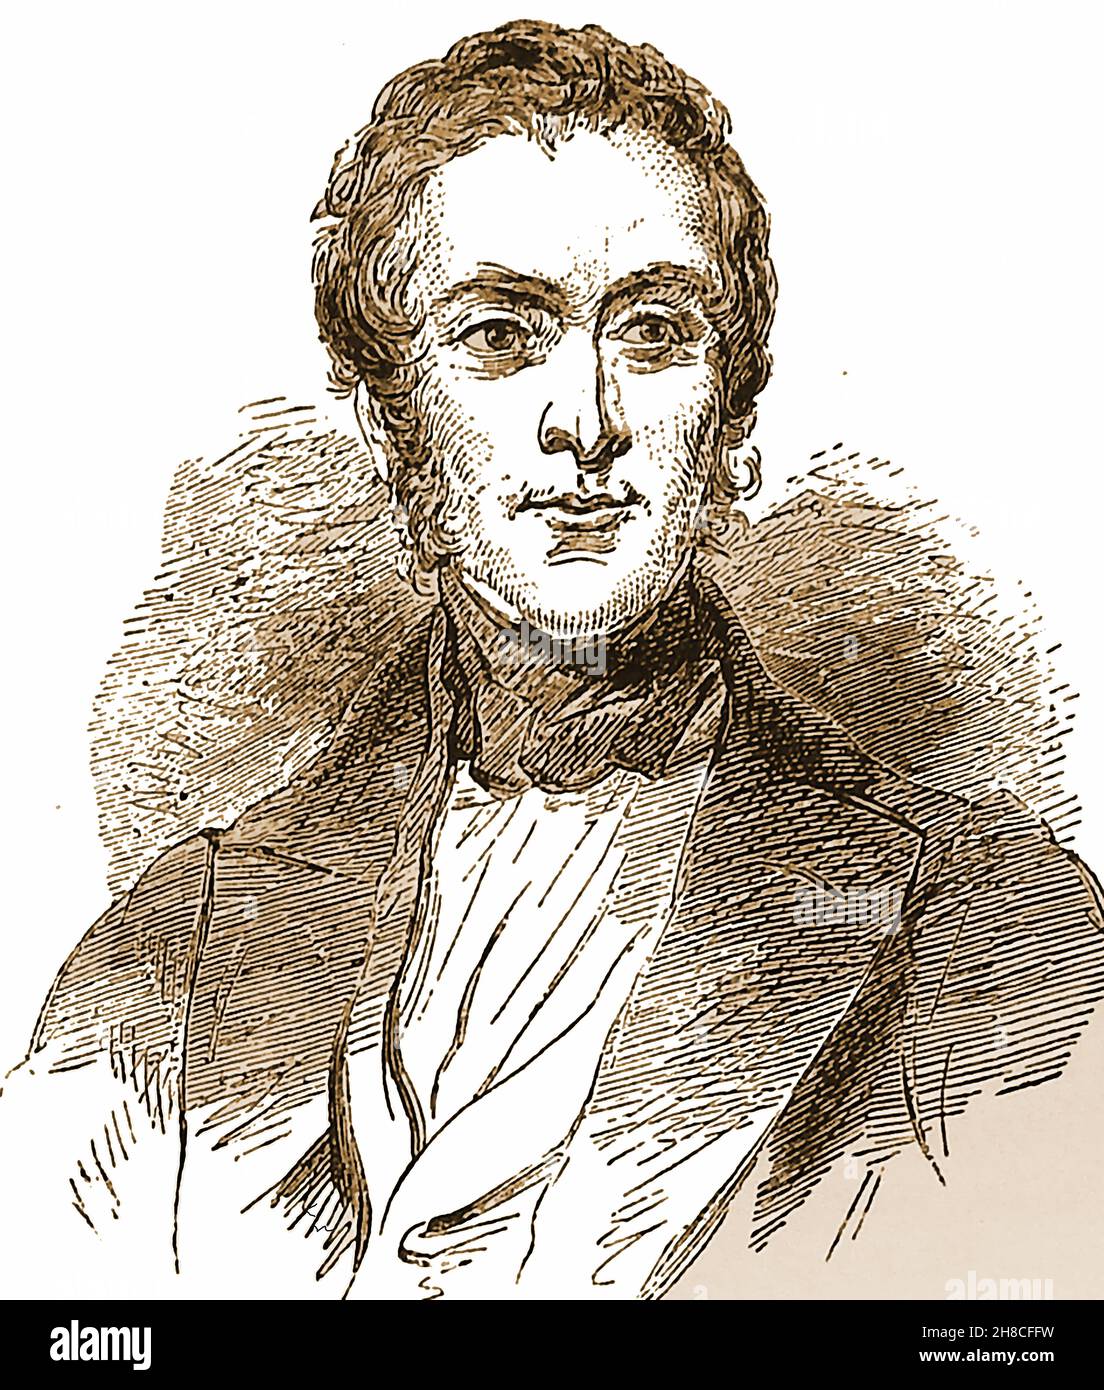 Ein Porträt des britischen Politikers Fox Maule-Ramsay, 11th Earl of Dalhousie, (1801 – 1874), auch bekannt als Fox Maule und The Lord Panmure, aus dem Jahr 1893. Er war vom 8th. Februar 1855 bis zum 21st. Februar 1858 britischer Außenminister Stockfoto